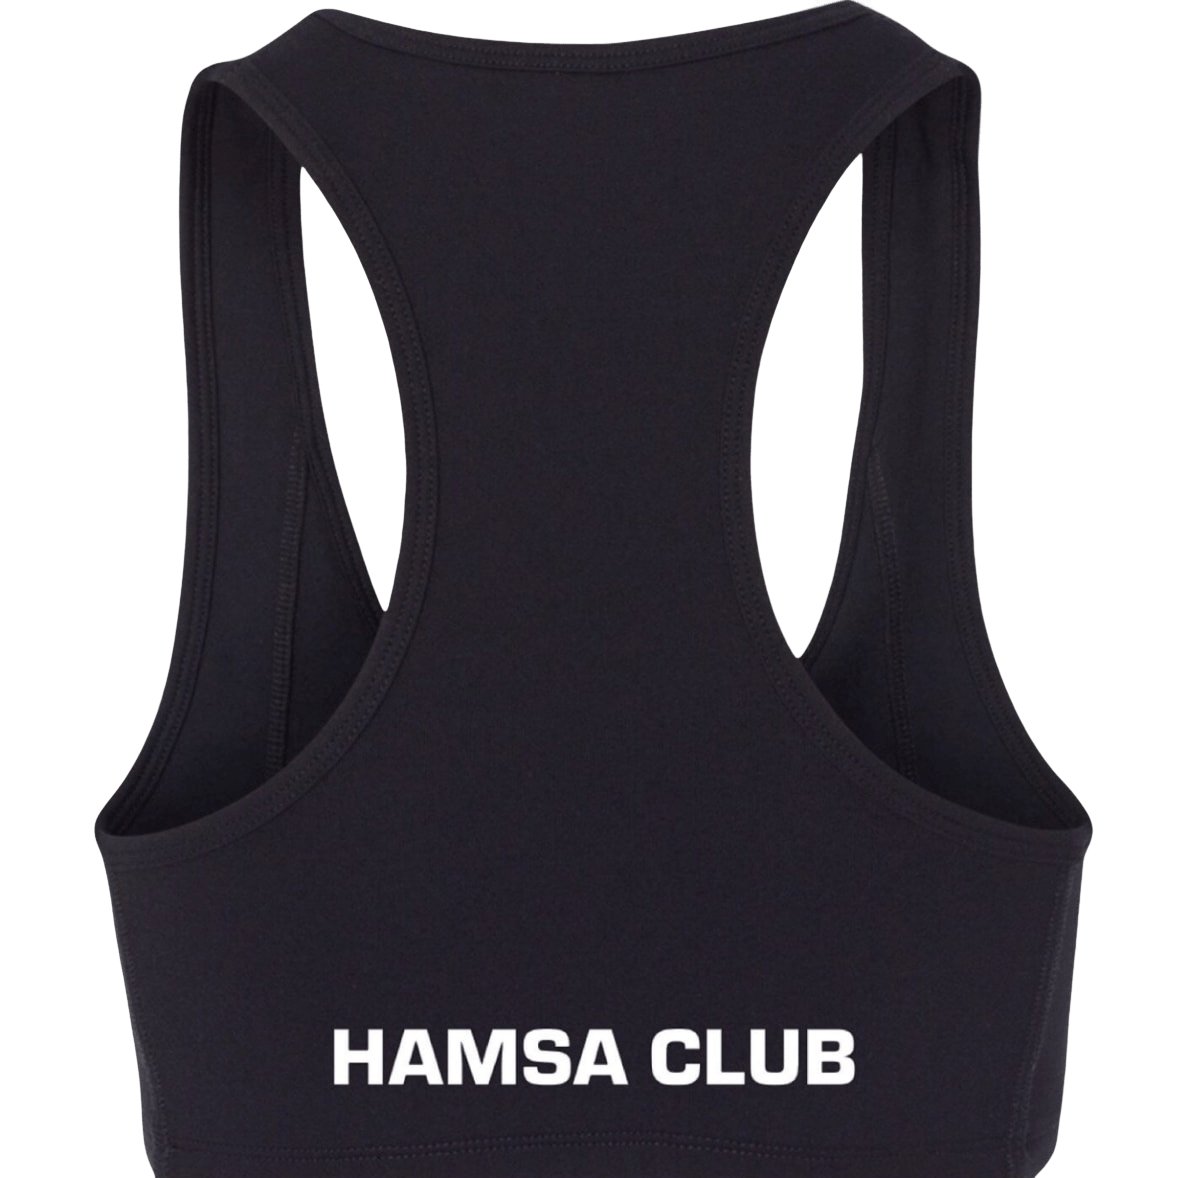 SPORTS BRA - Hamsa Club